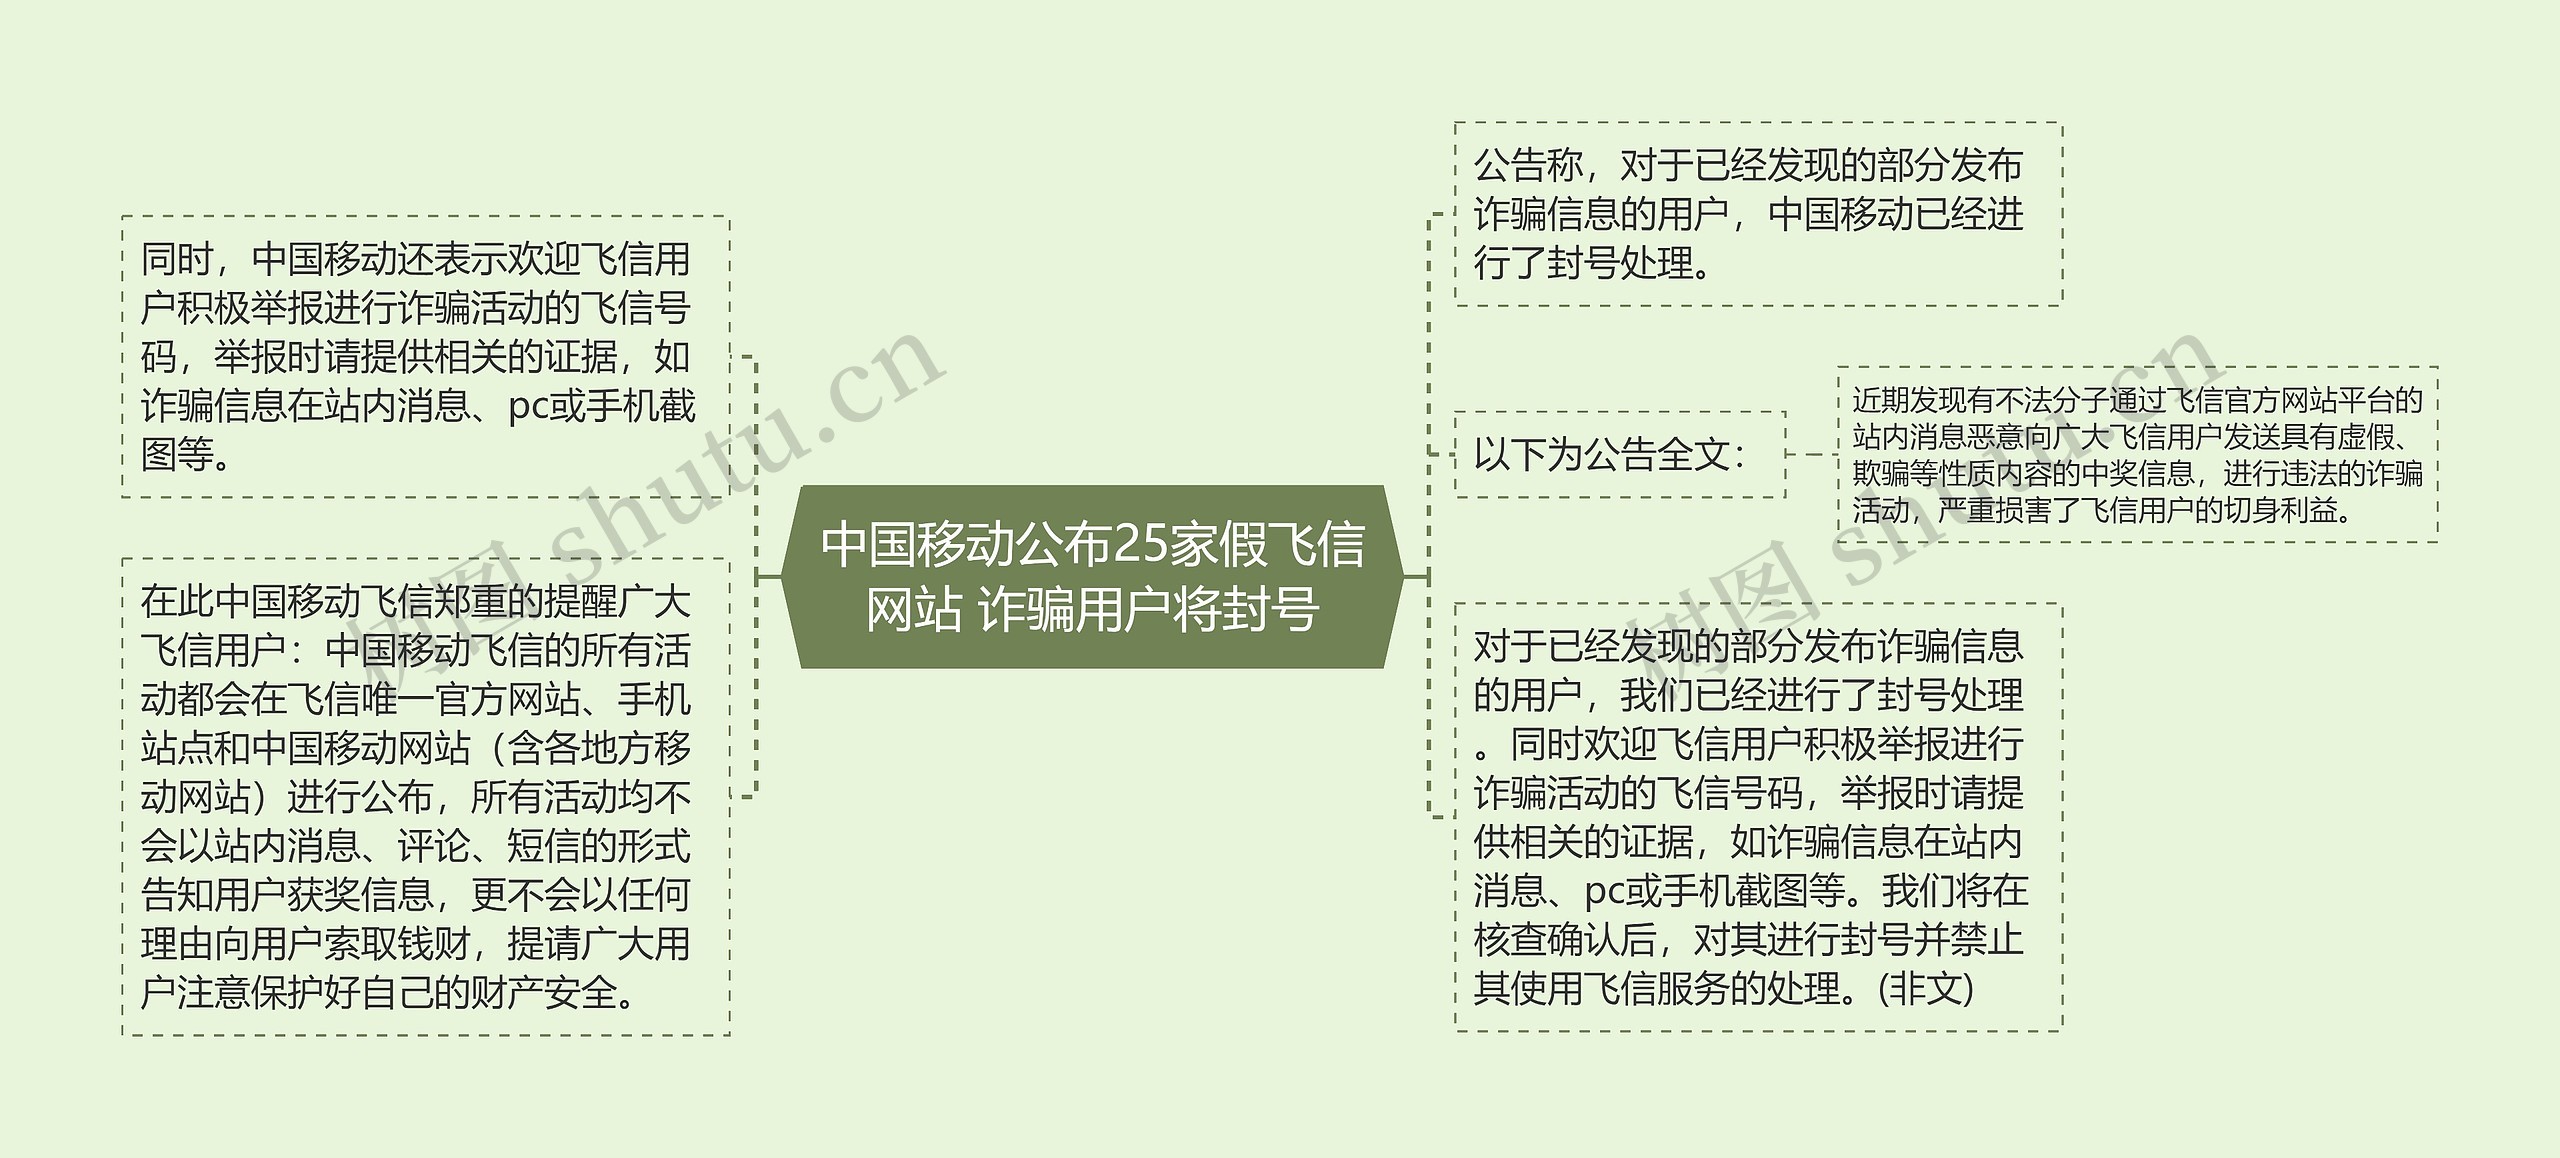 中国移动公布25家假飞信网站 诈骗用户将封号